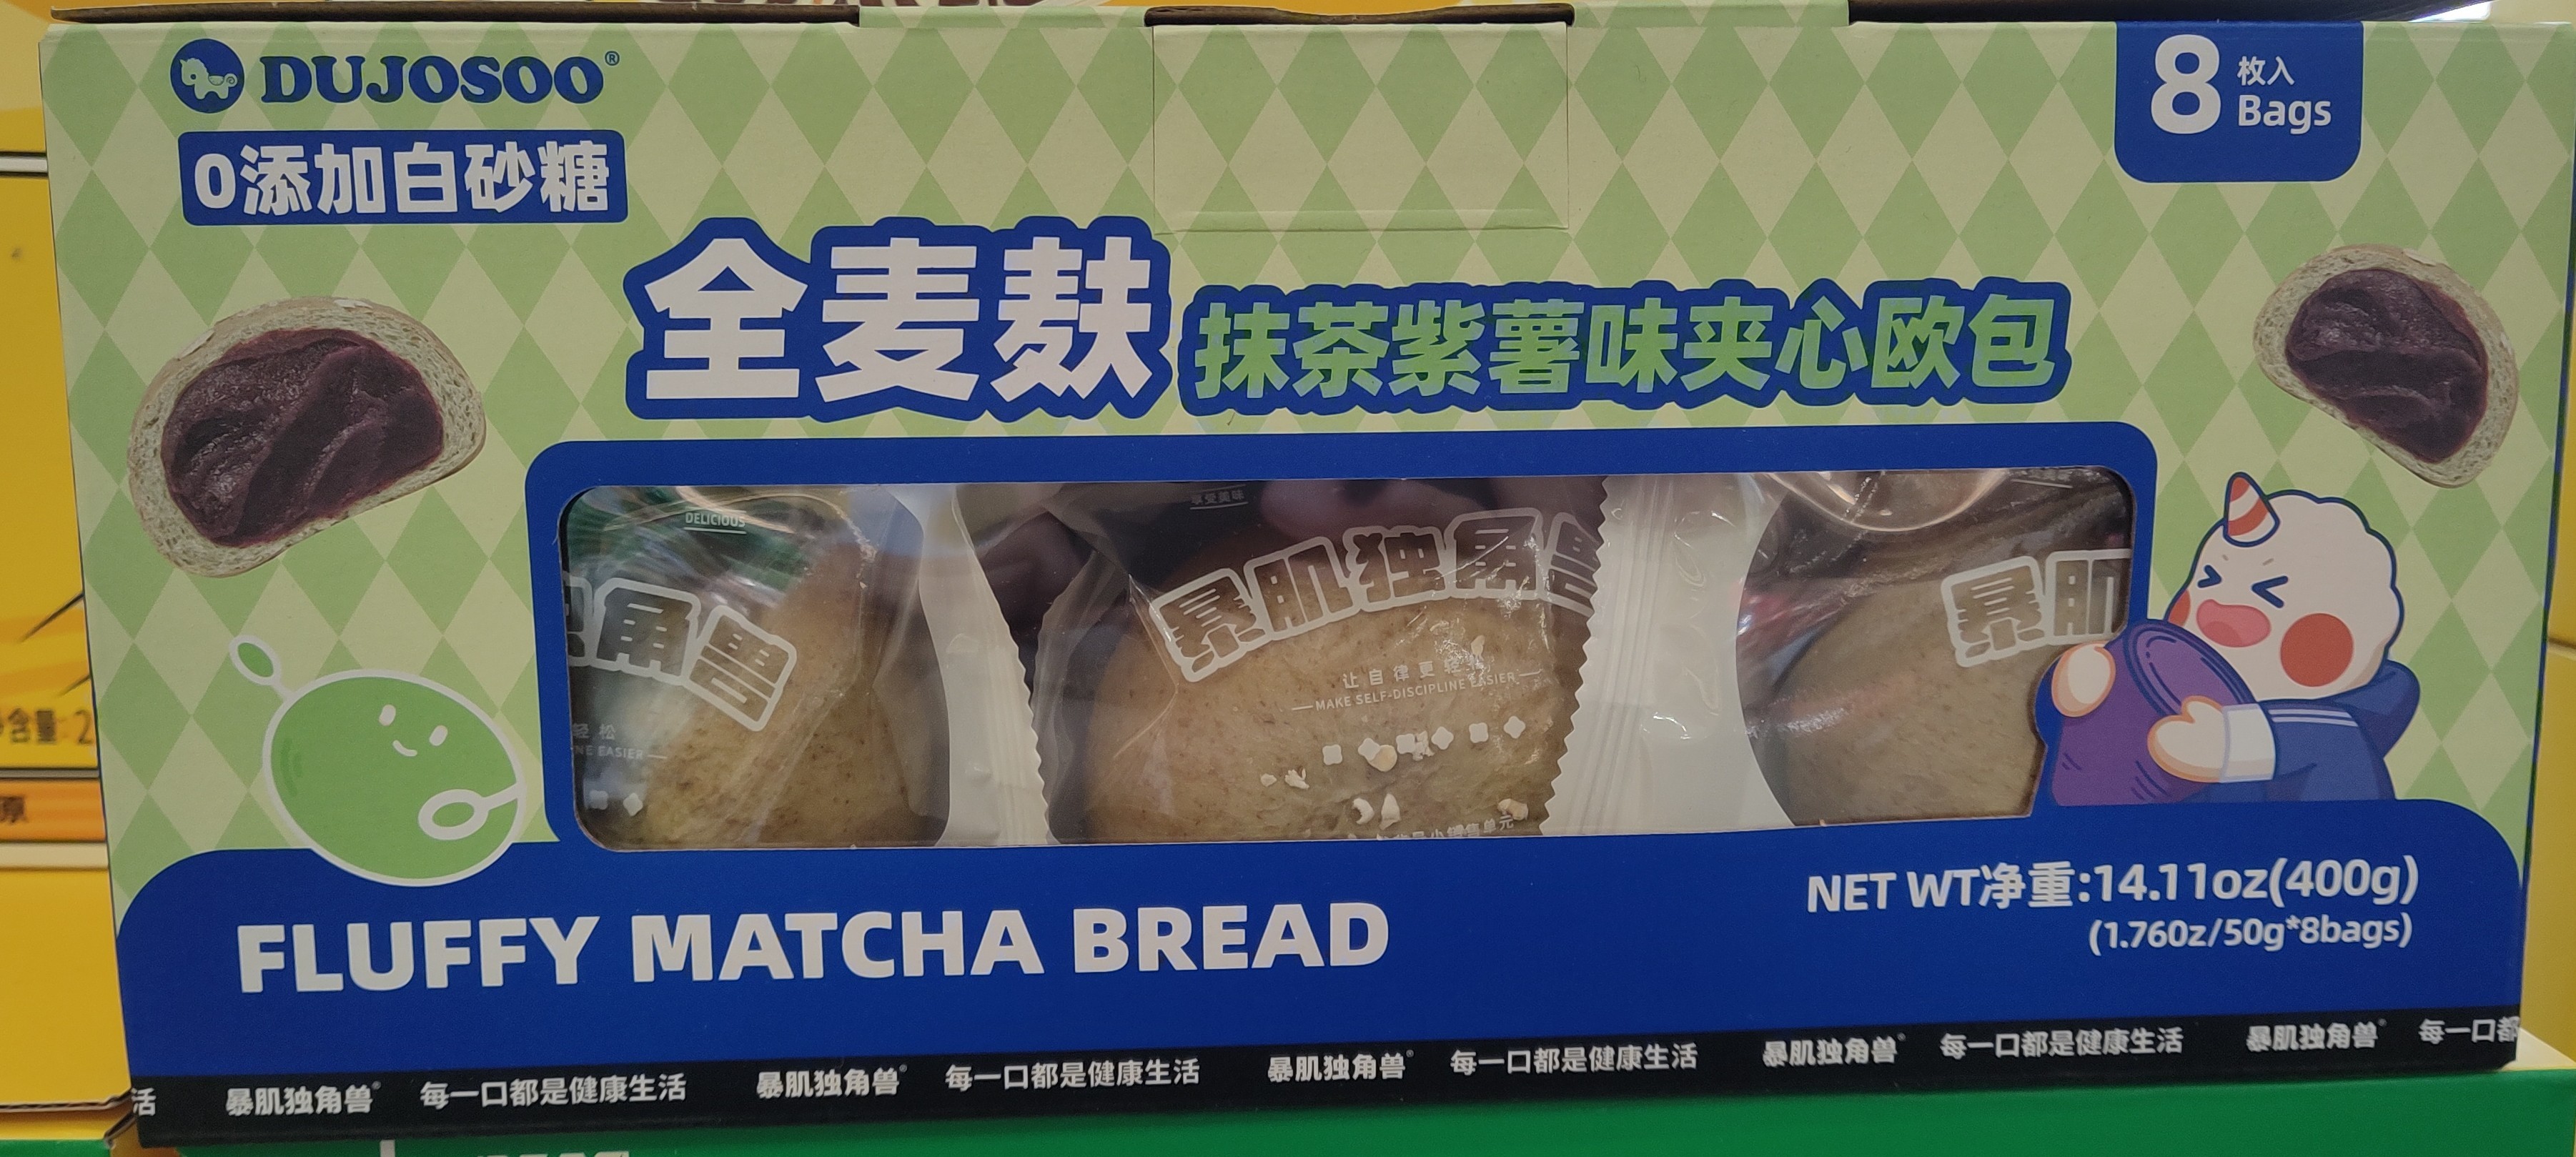 dujosoo-fluffy-matcha-bread